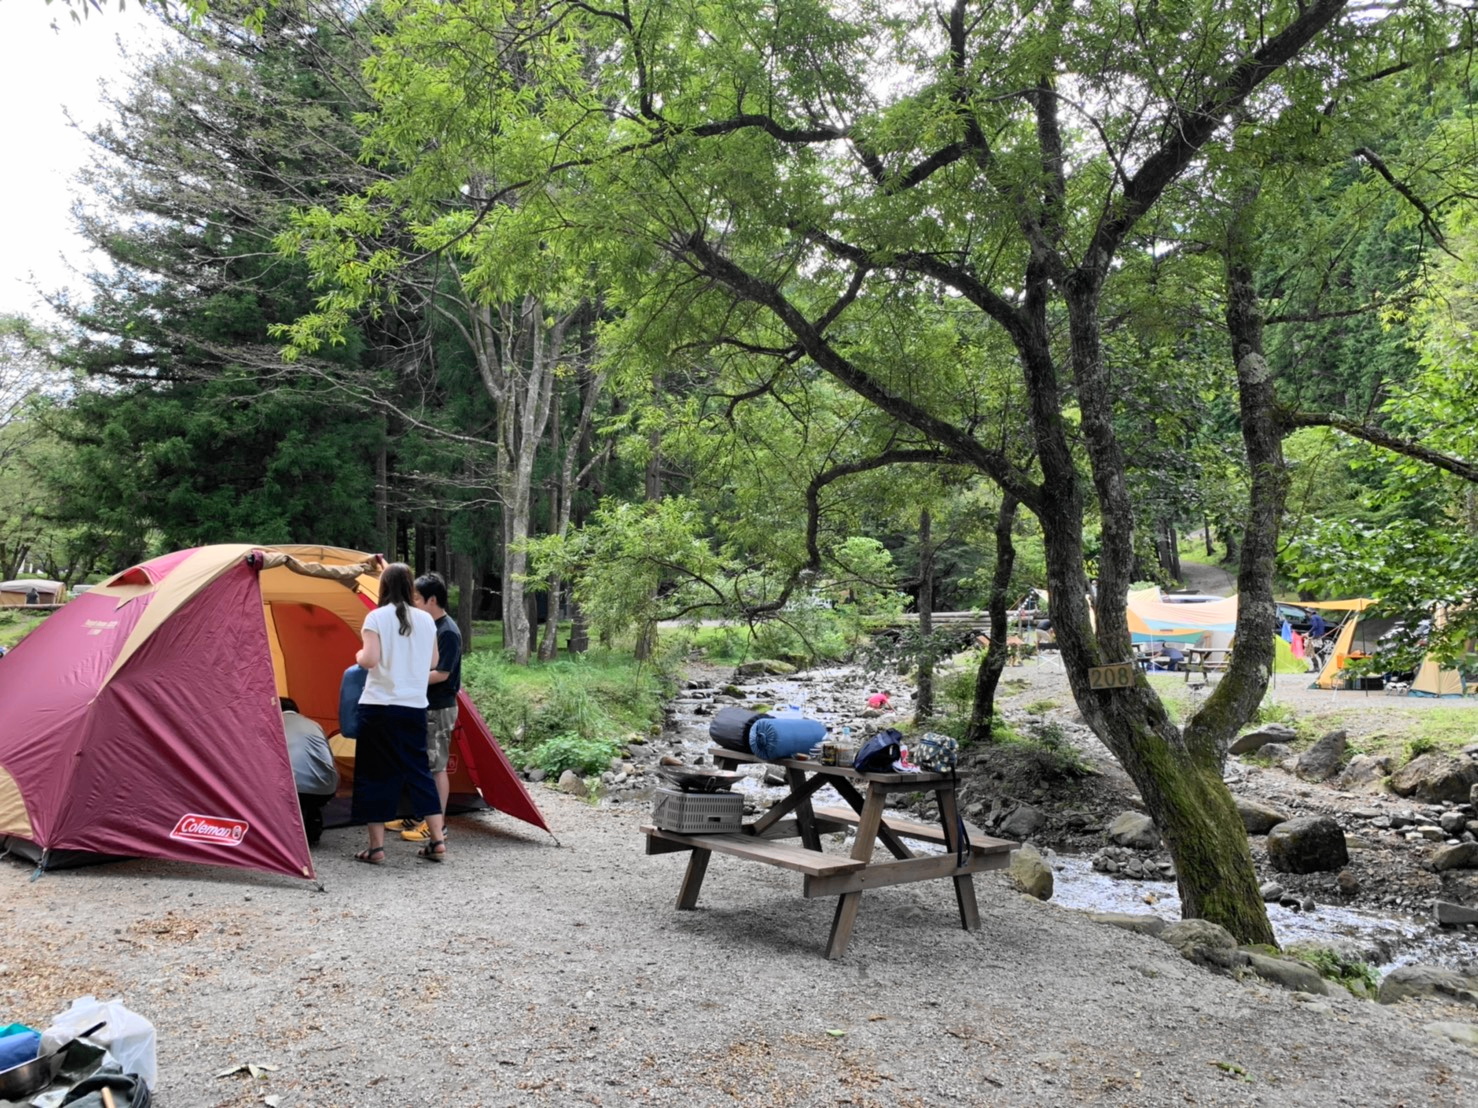 Boscoオートキャンプベース 活動のカテゴリー 山奥快適キャンプ日記